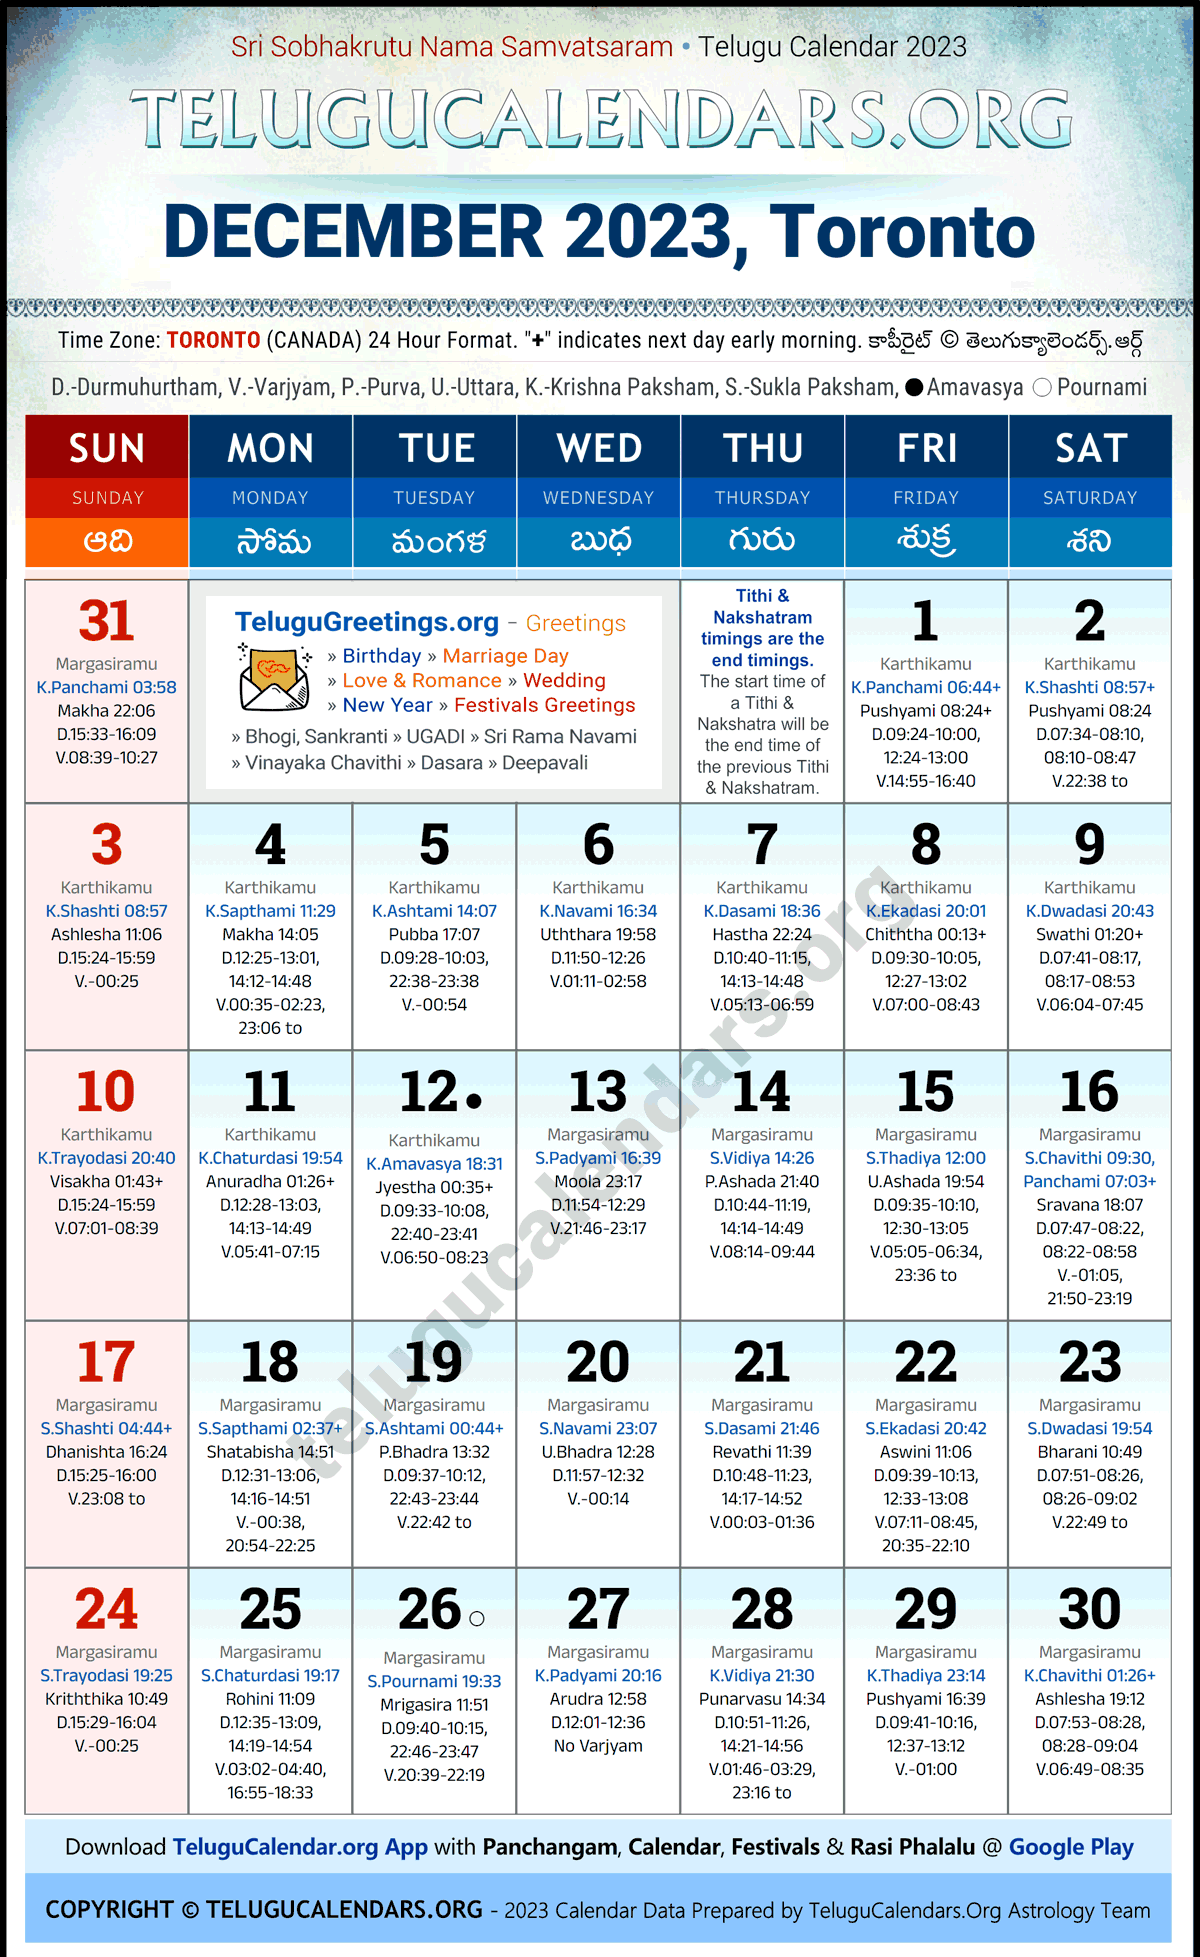 Telugu Calendar 2023 December Festivals for Toronto